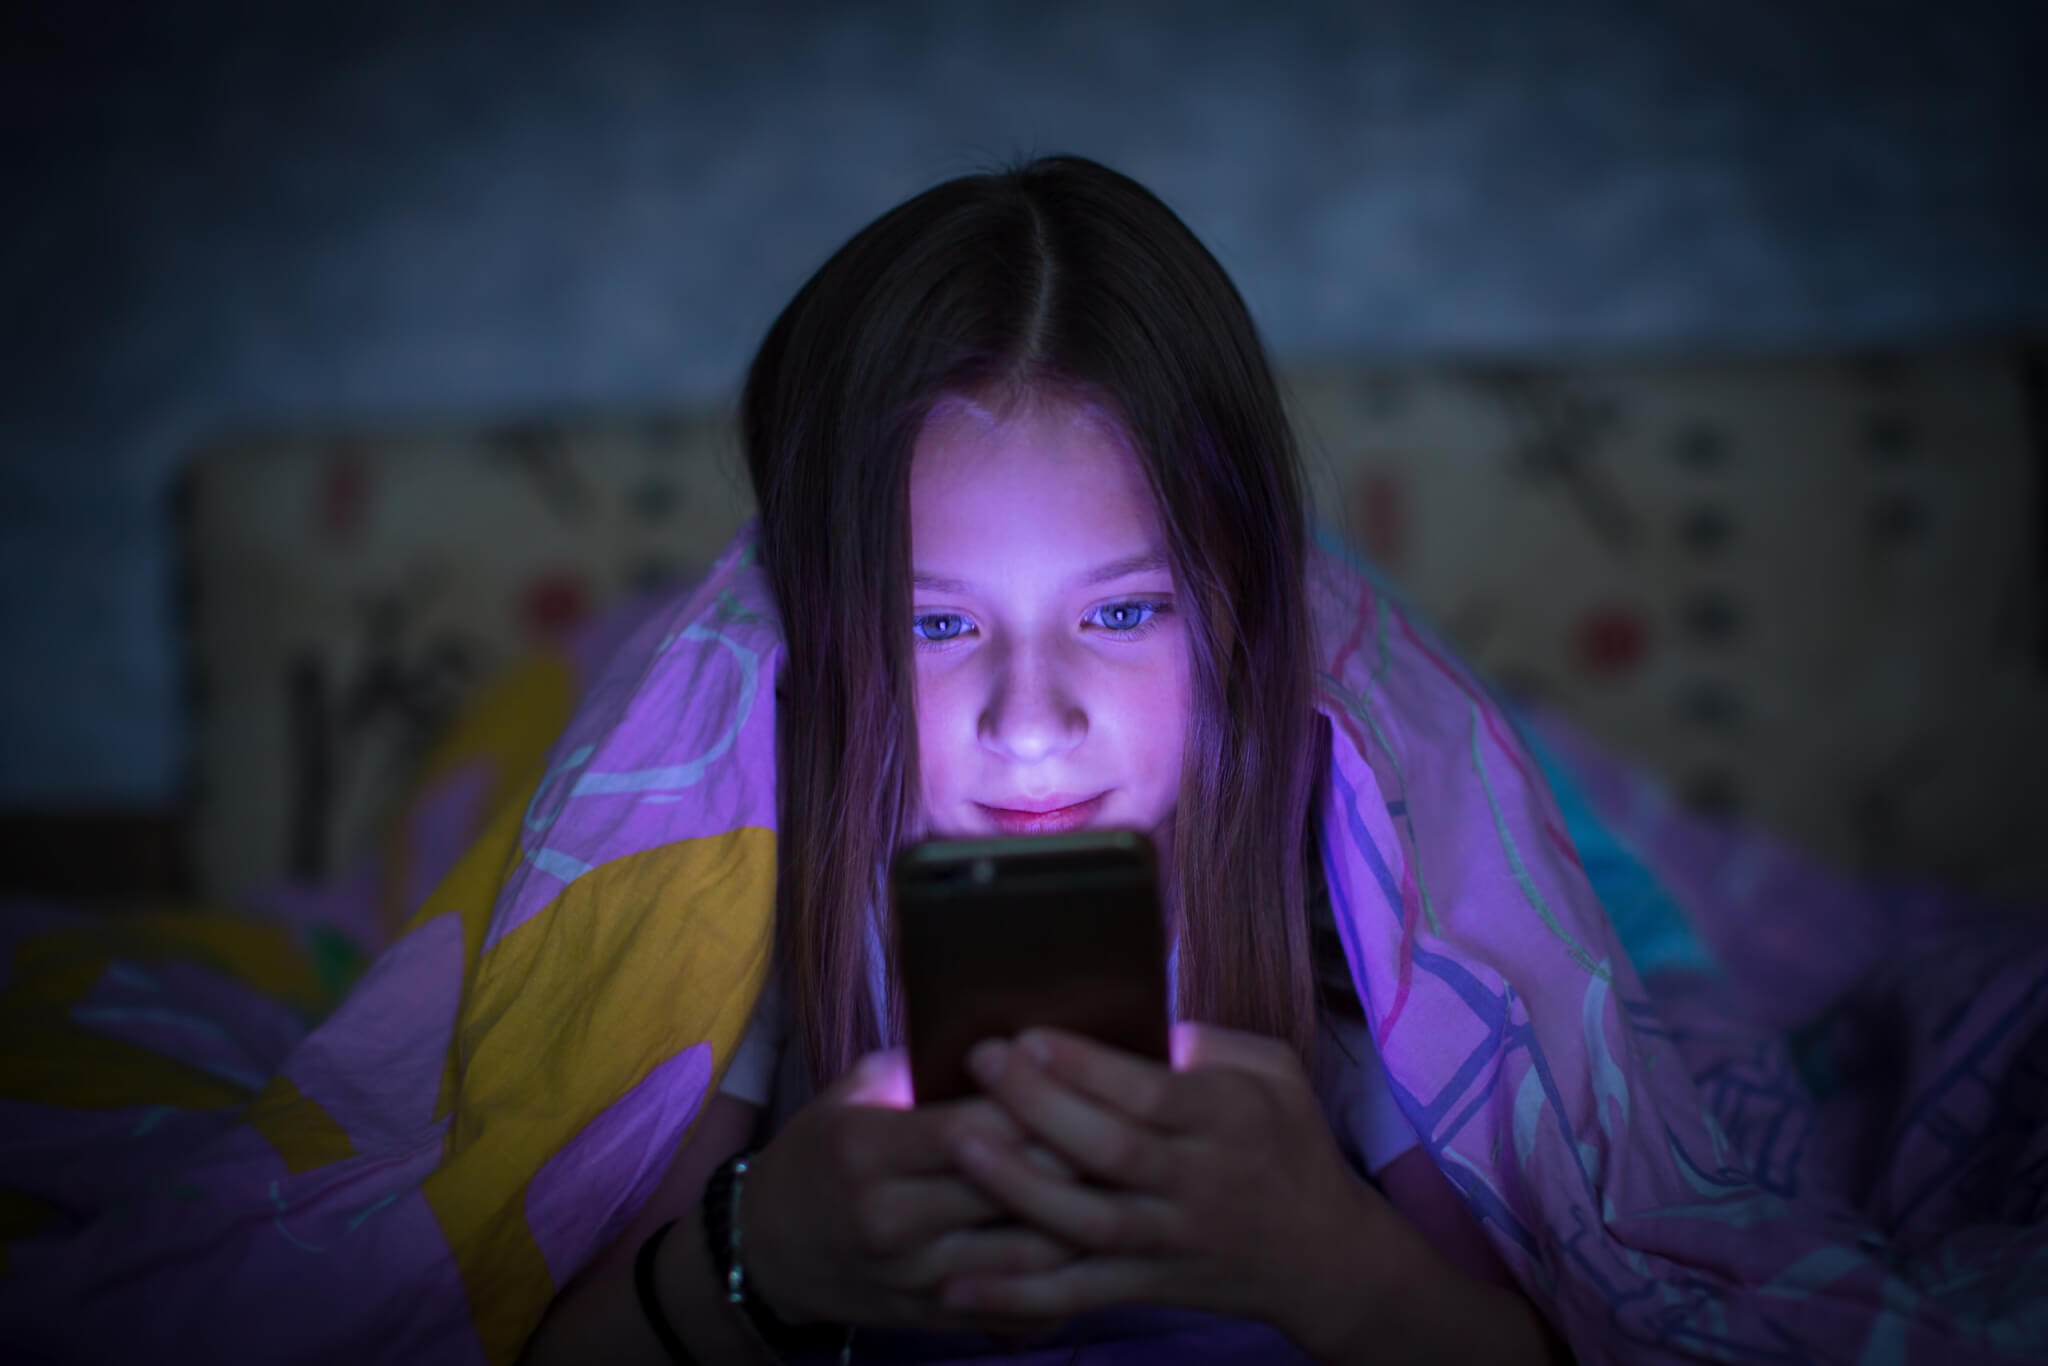 Adolescente au lit regardant un smartphone la nuit